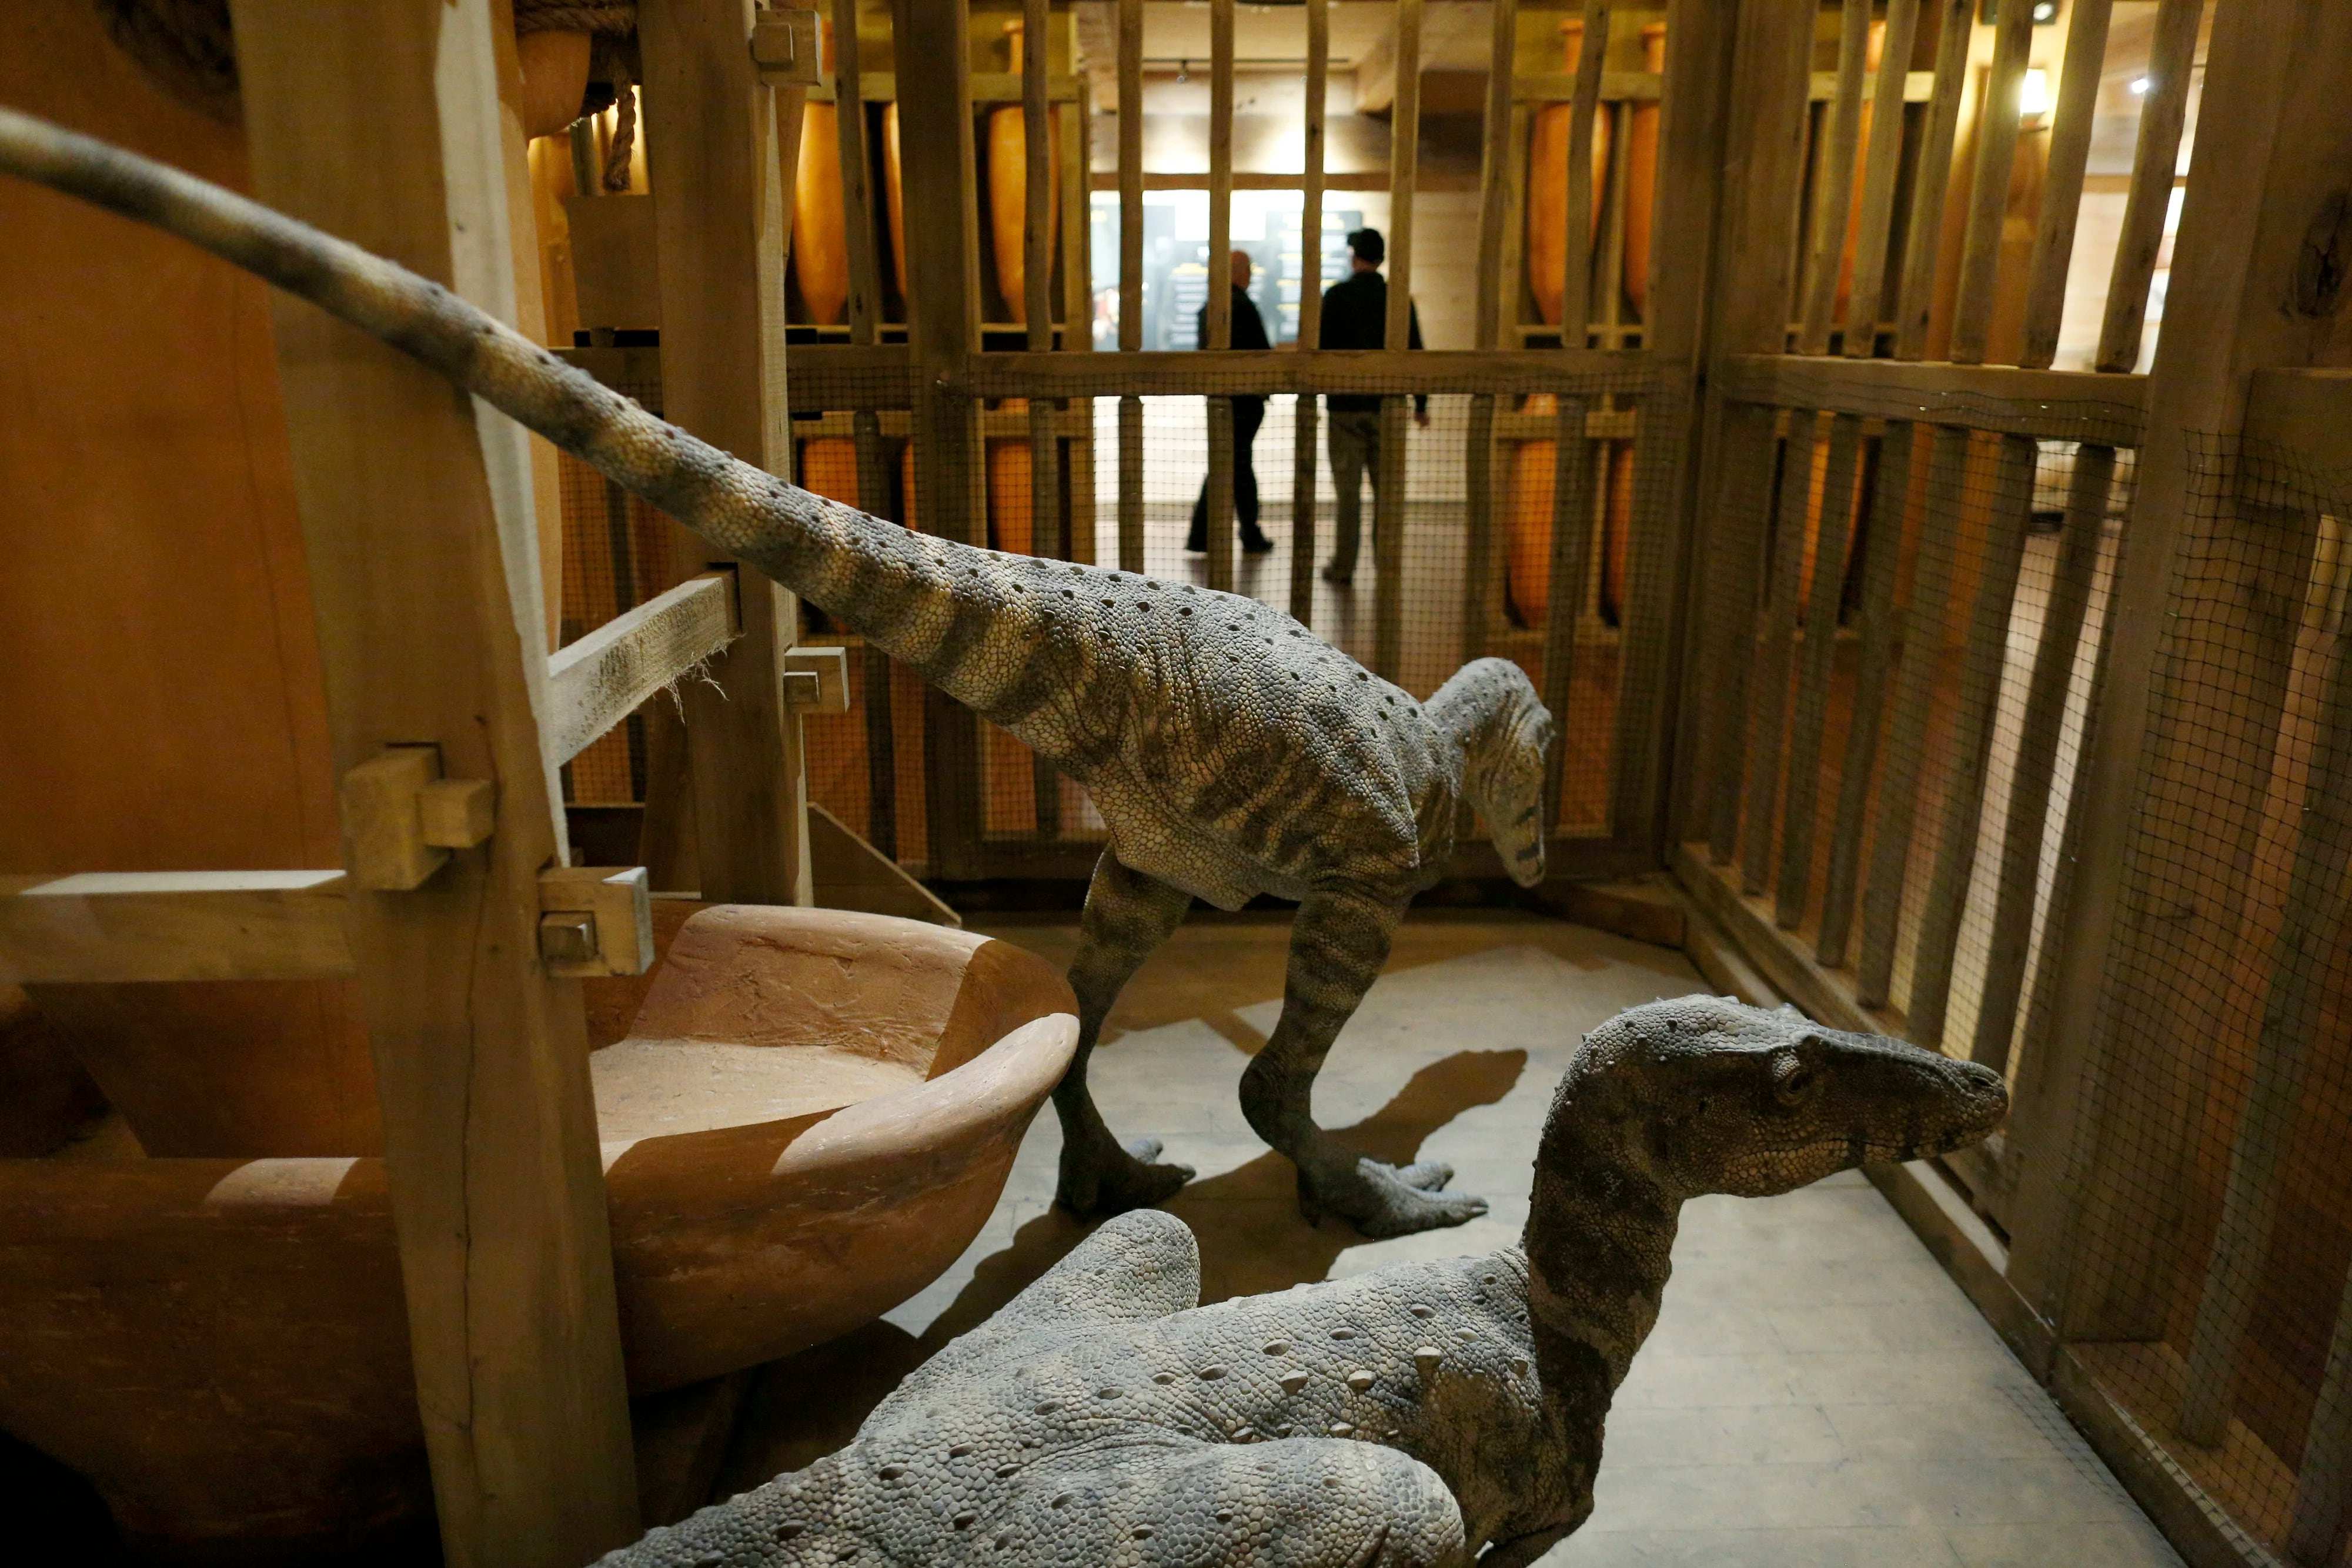 Réplica de dinosaurios dentro de una jaula en el arca. Foto por The Washington Post, Luke Sharrett.